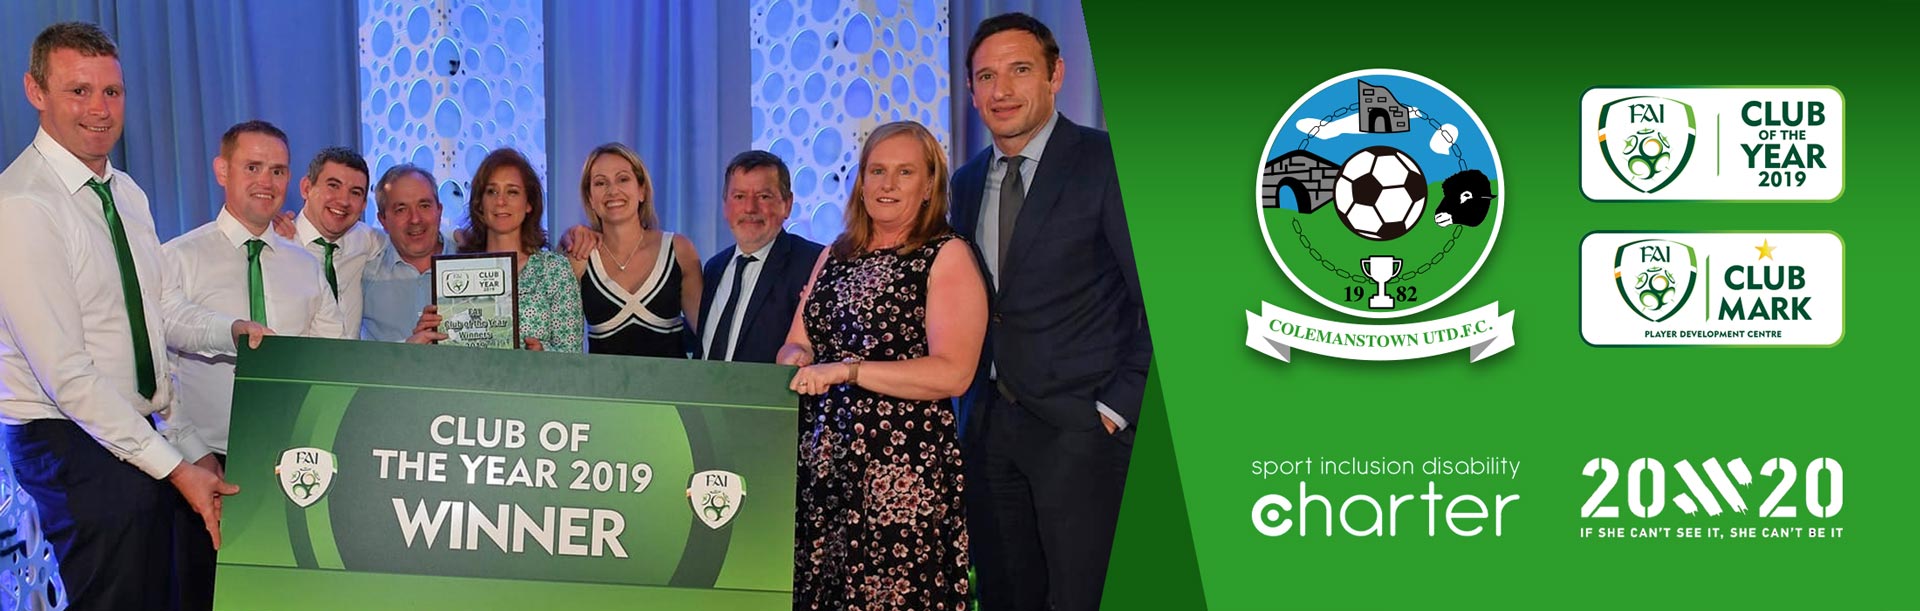 CUFC Club of the Year 2019 Award Night